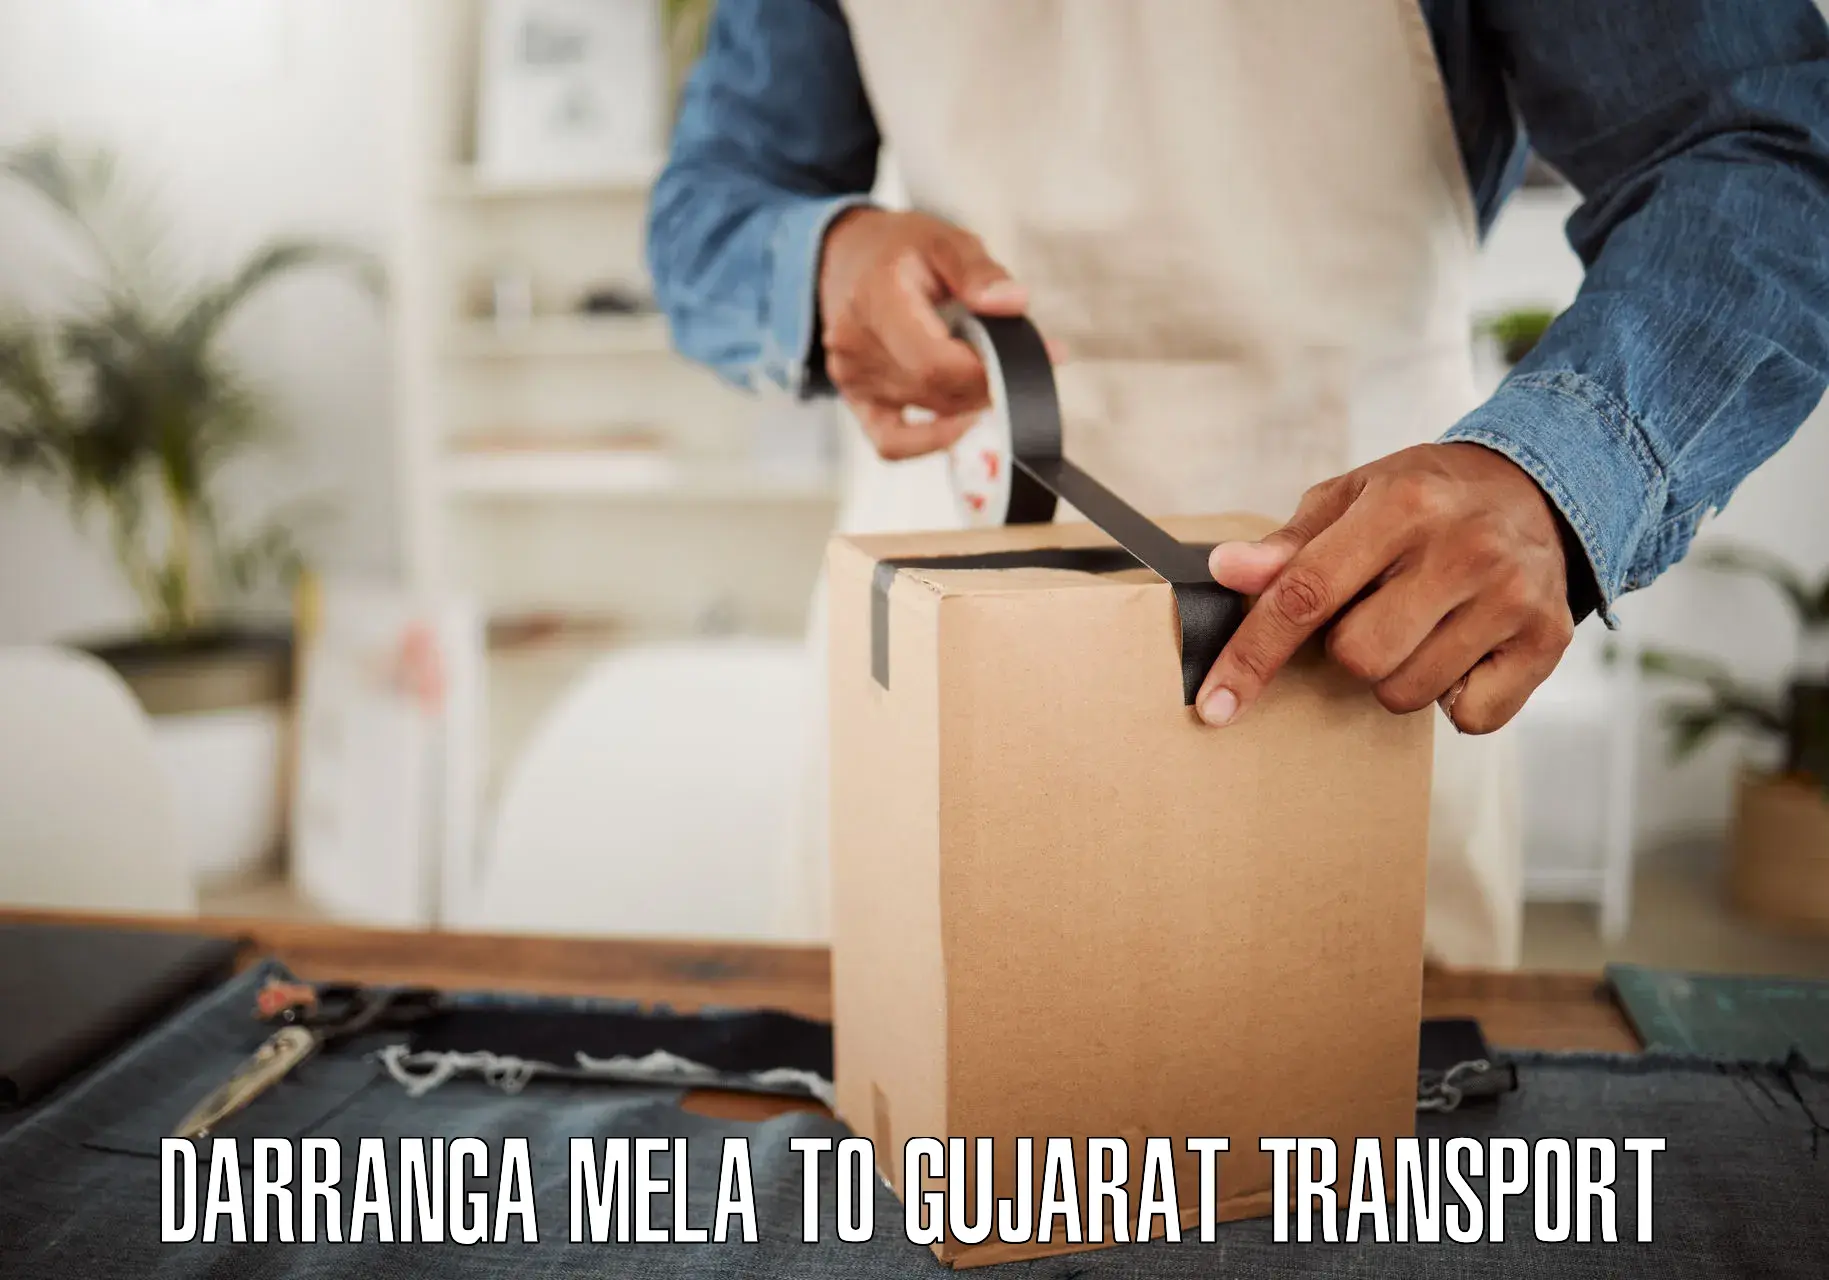 Transport in sharing Darranga Mela to Valsad